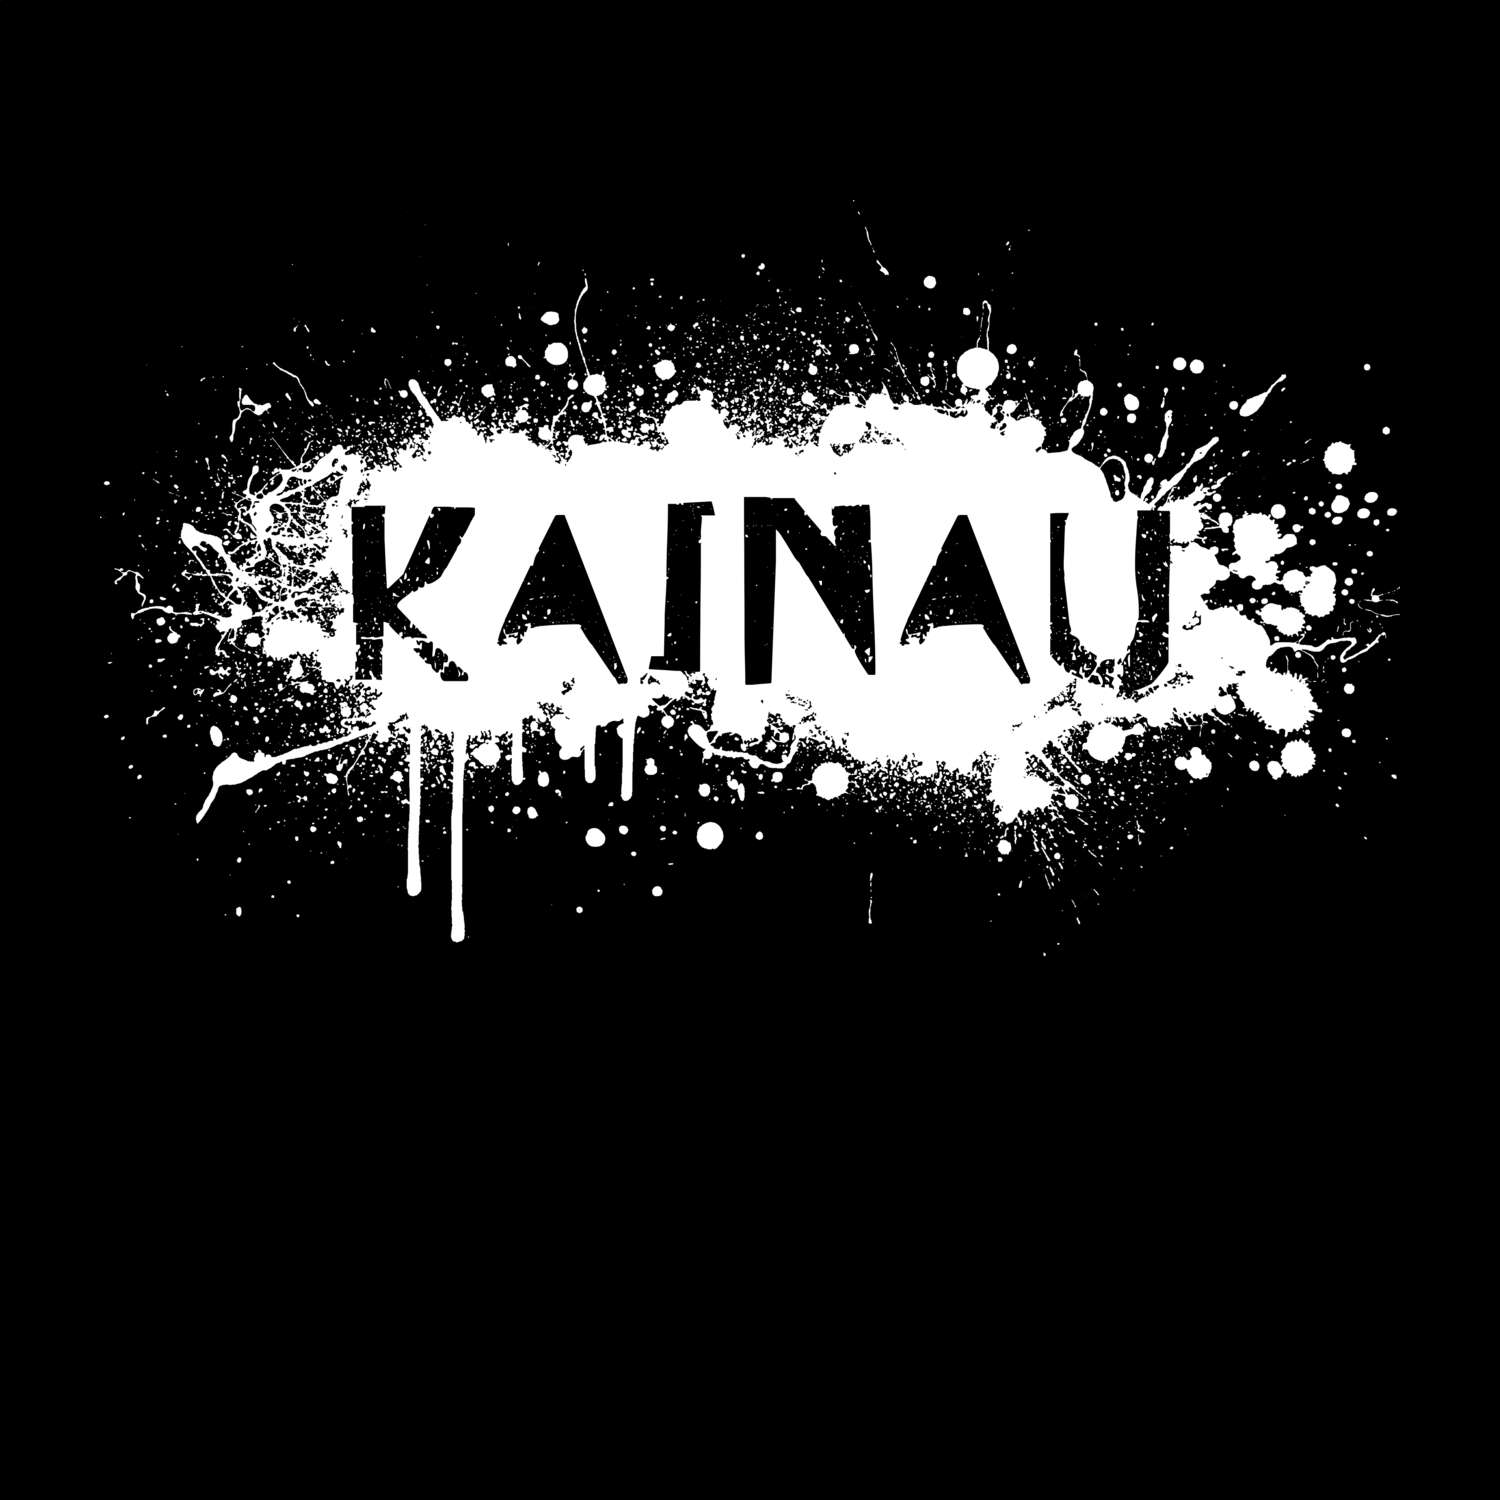 Kainau T-Shirt »Paint Splash Punk«